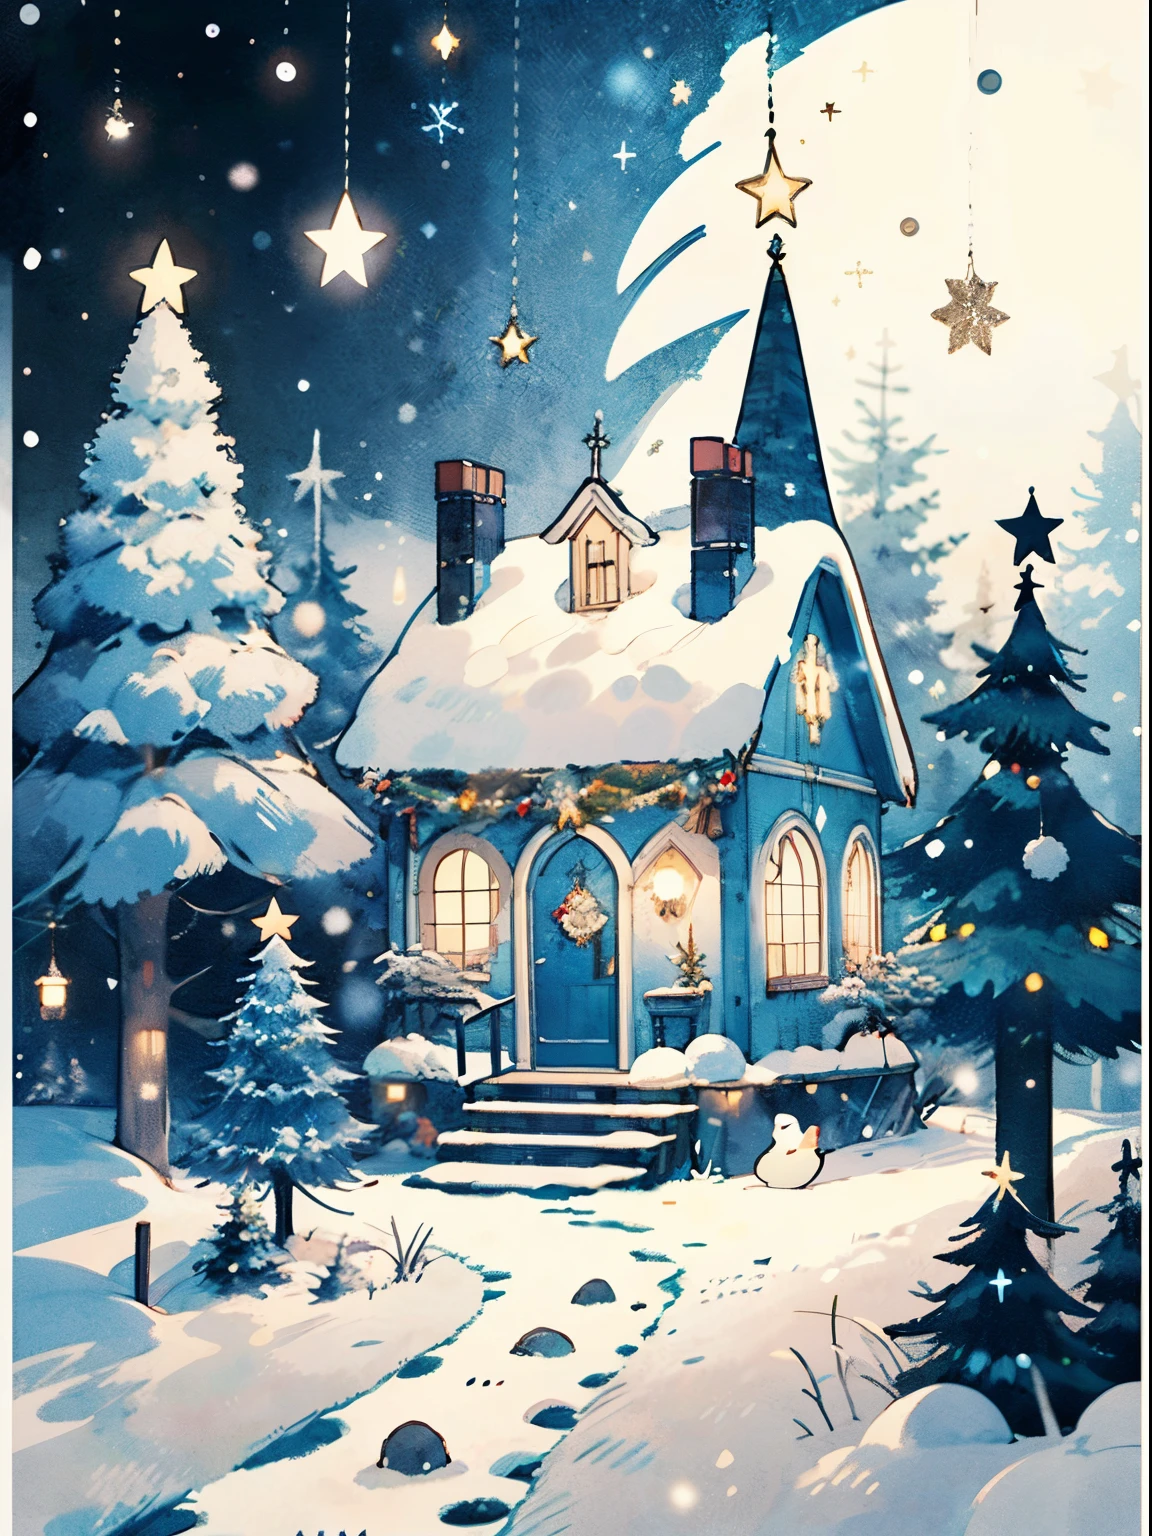 (((걸작))),최고의 품질, 화이트타운, 러시아 새해, 경례 , 밝은 색, 강설, 크리스마스 트리, balls on the 크리스마스 트리, 숲 속의 오두막, 새해 전날